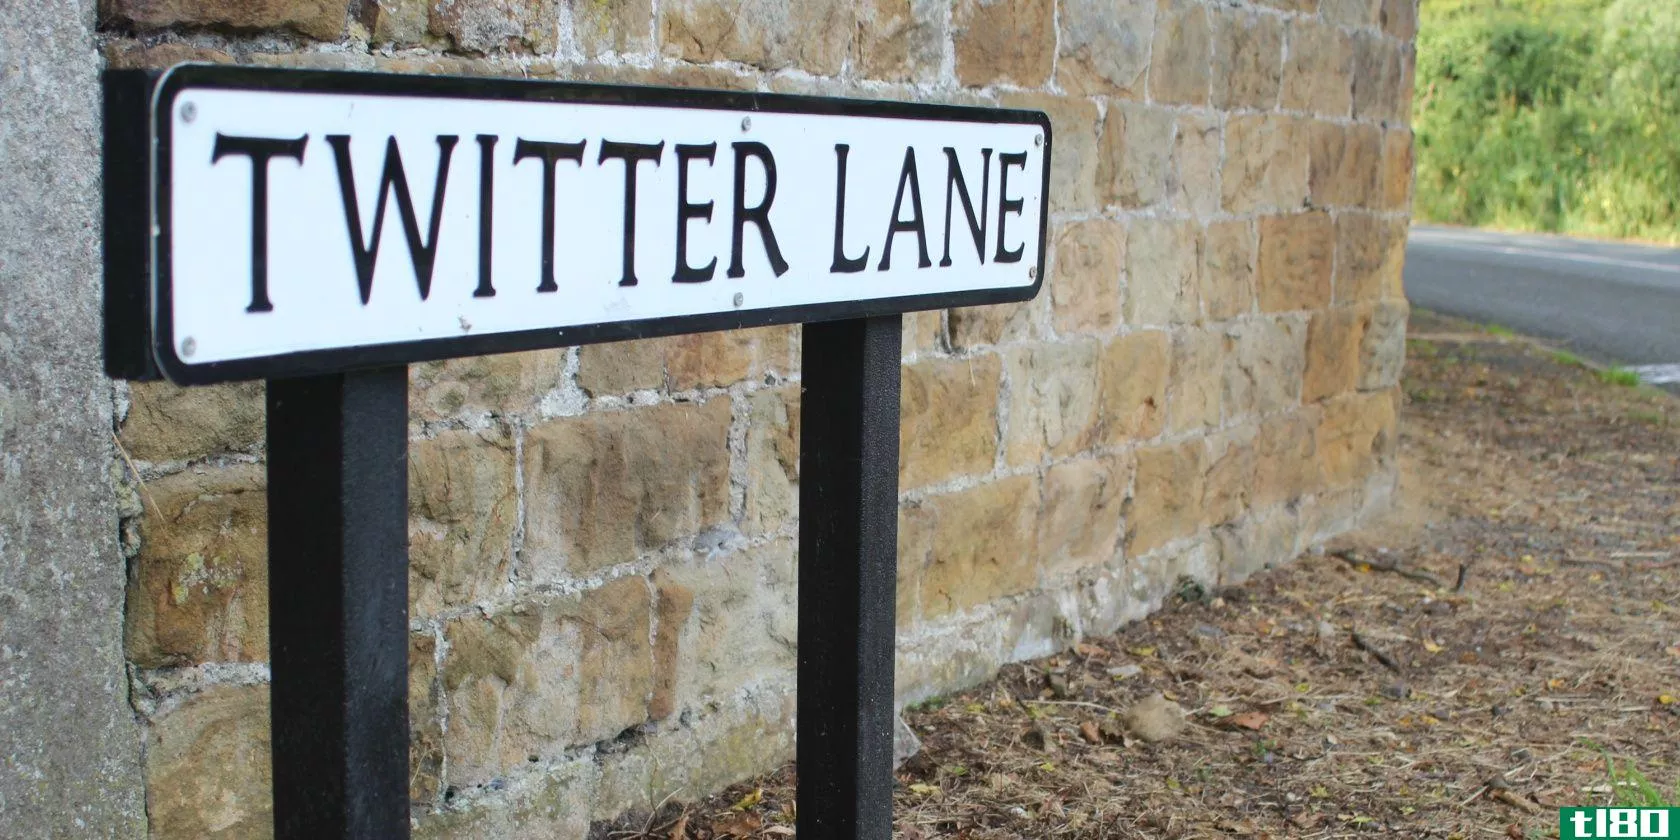 twitter-lane-street-sign-2